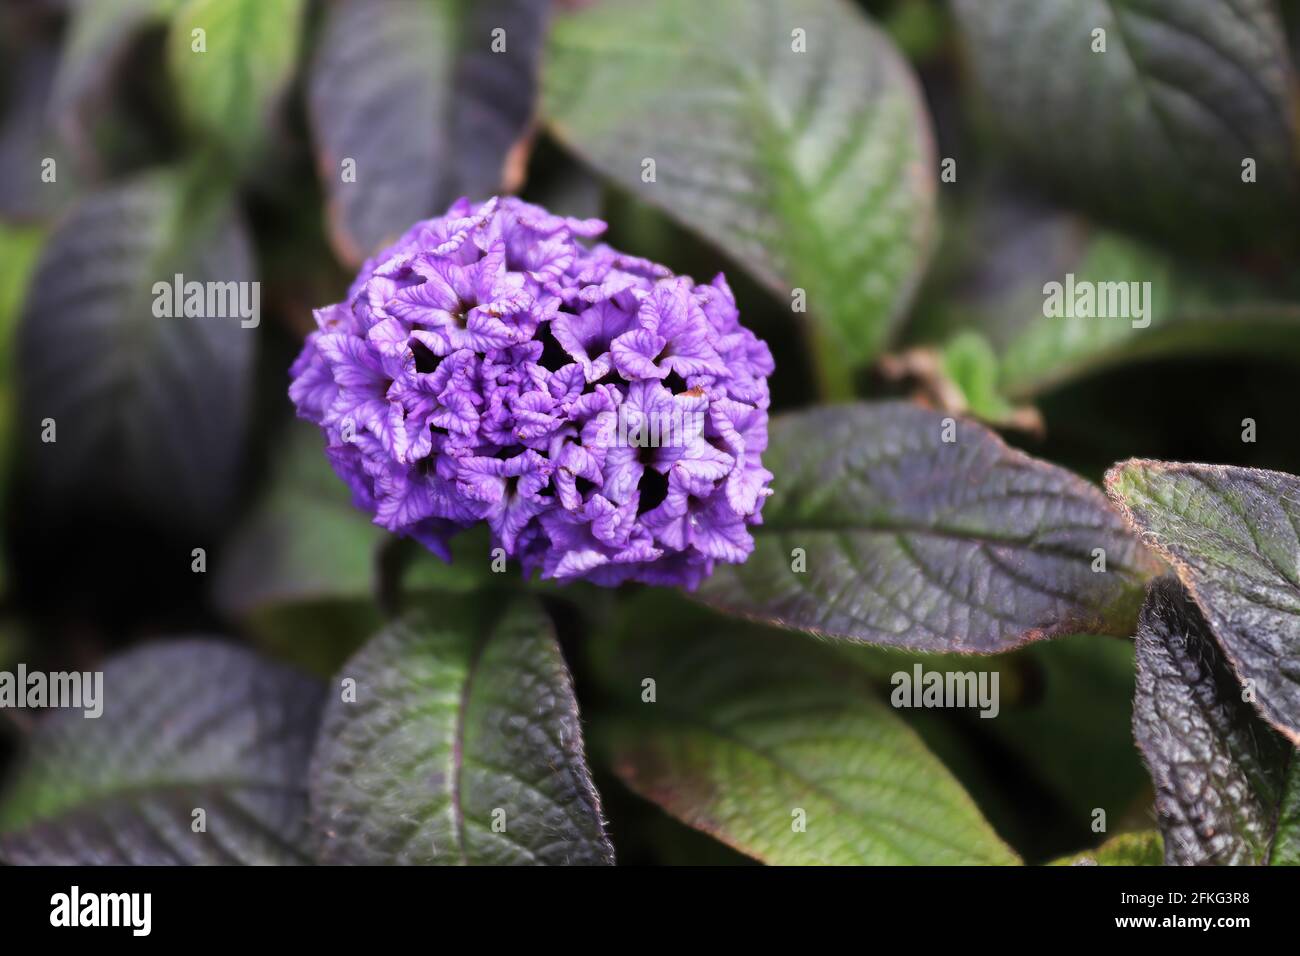 Closeup of purple heliptropium flowers in full bloom Stock Photo